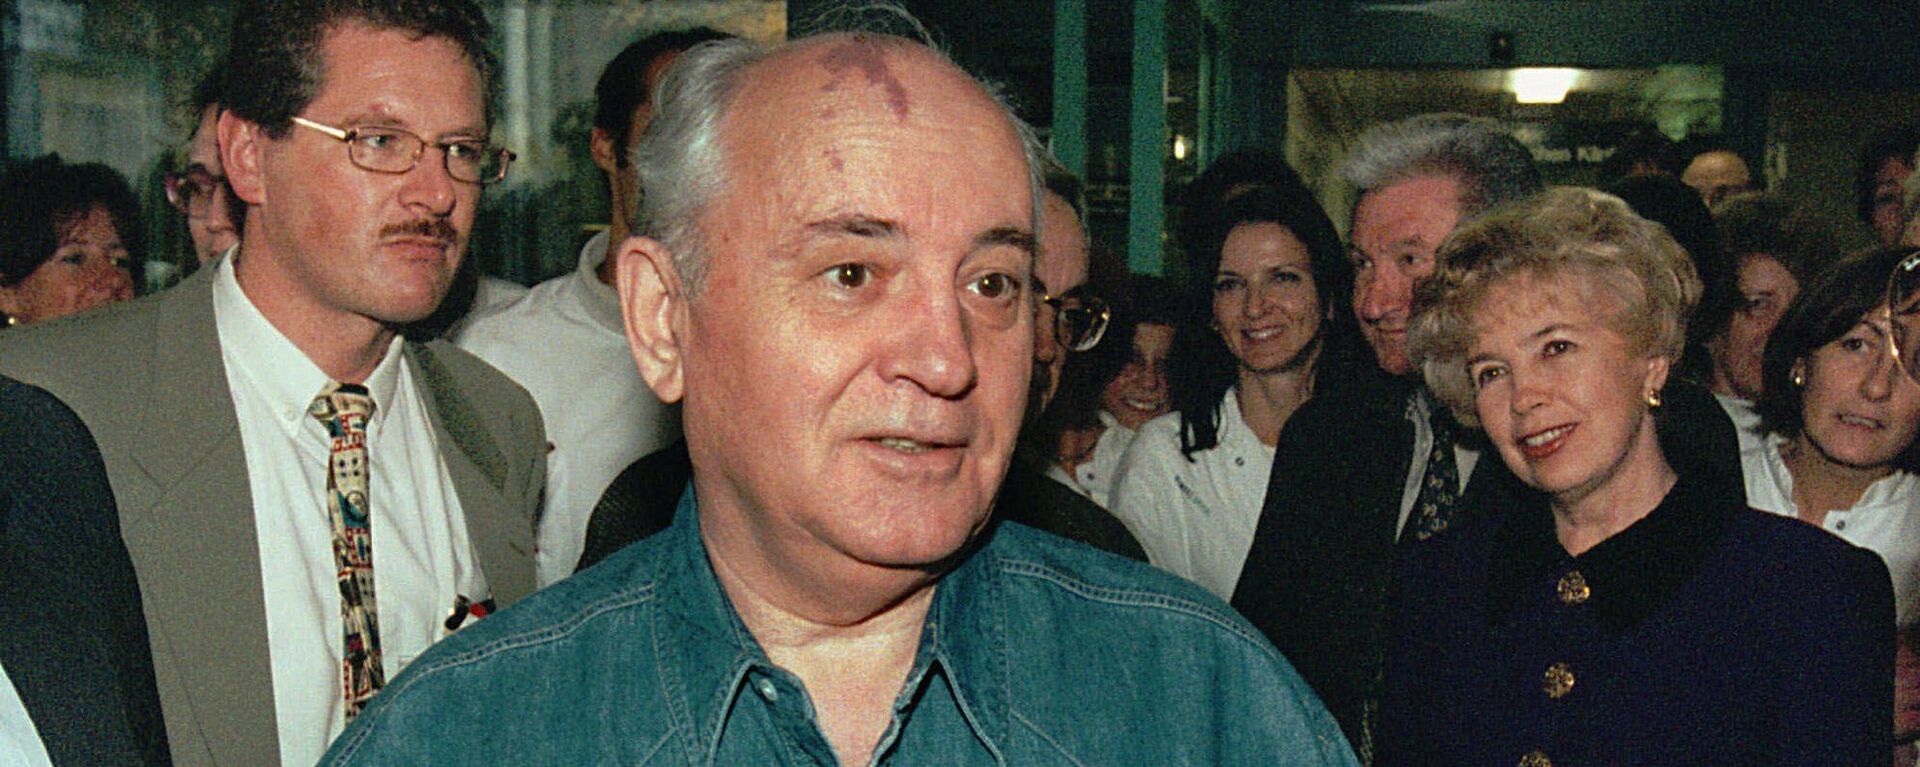 Горбачев 6 ноября 1997 года в Берне, Швейцария - Sputnik Тоҷикистон, 1920, 02.03.2021